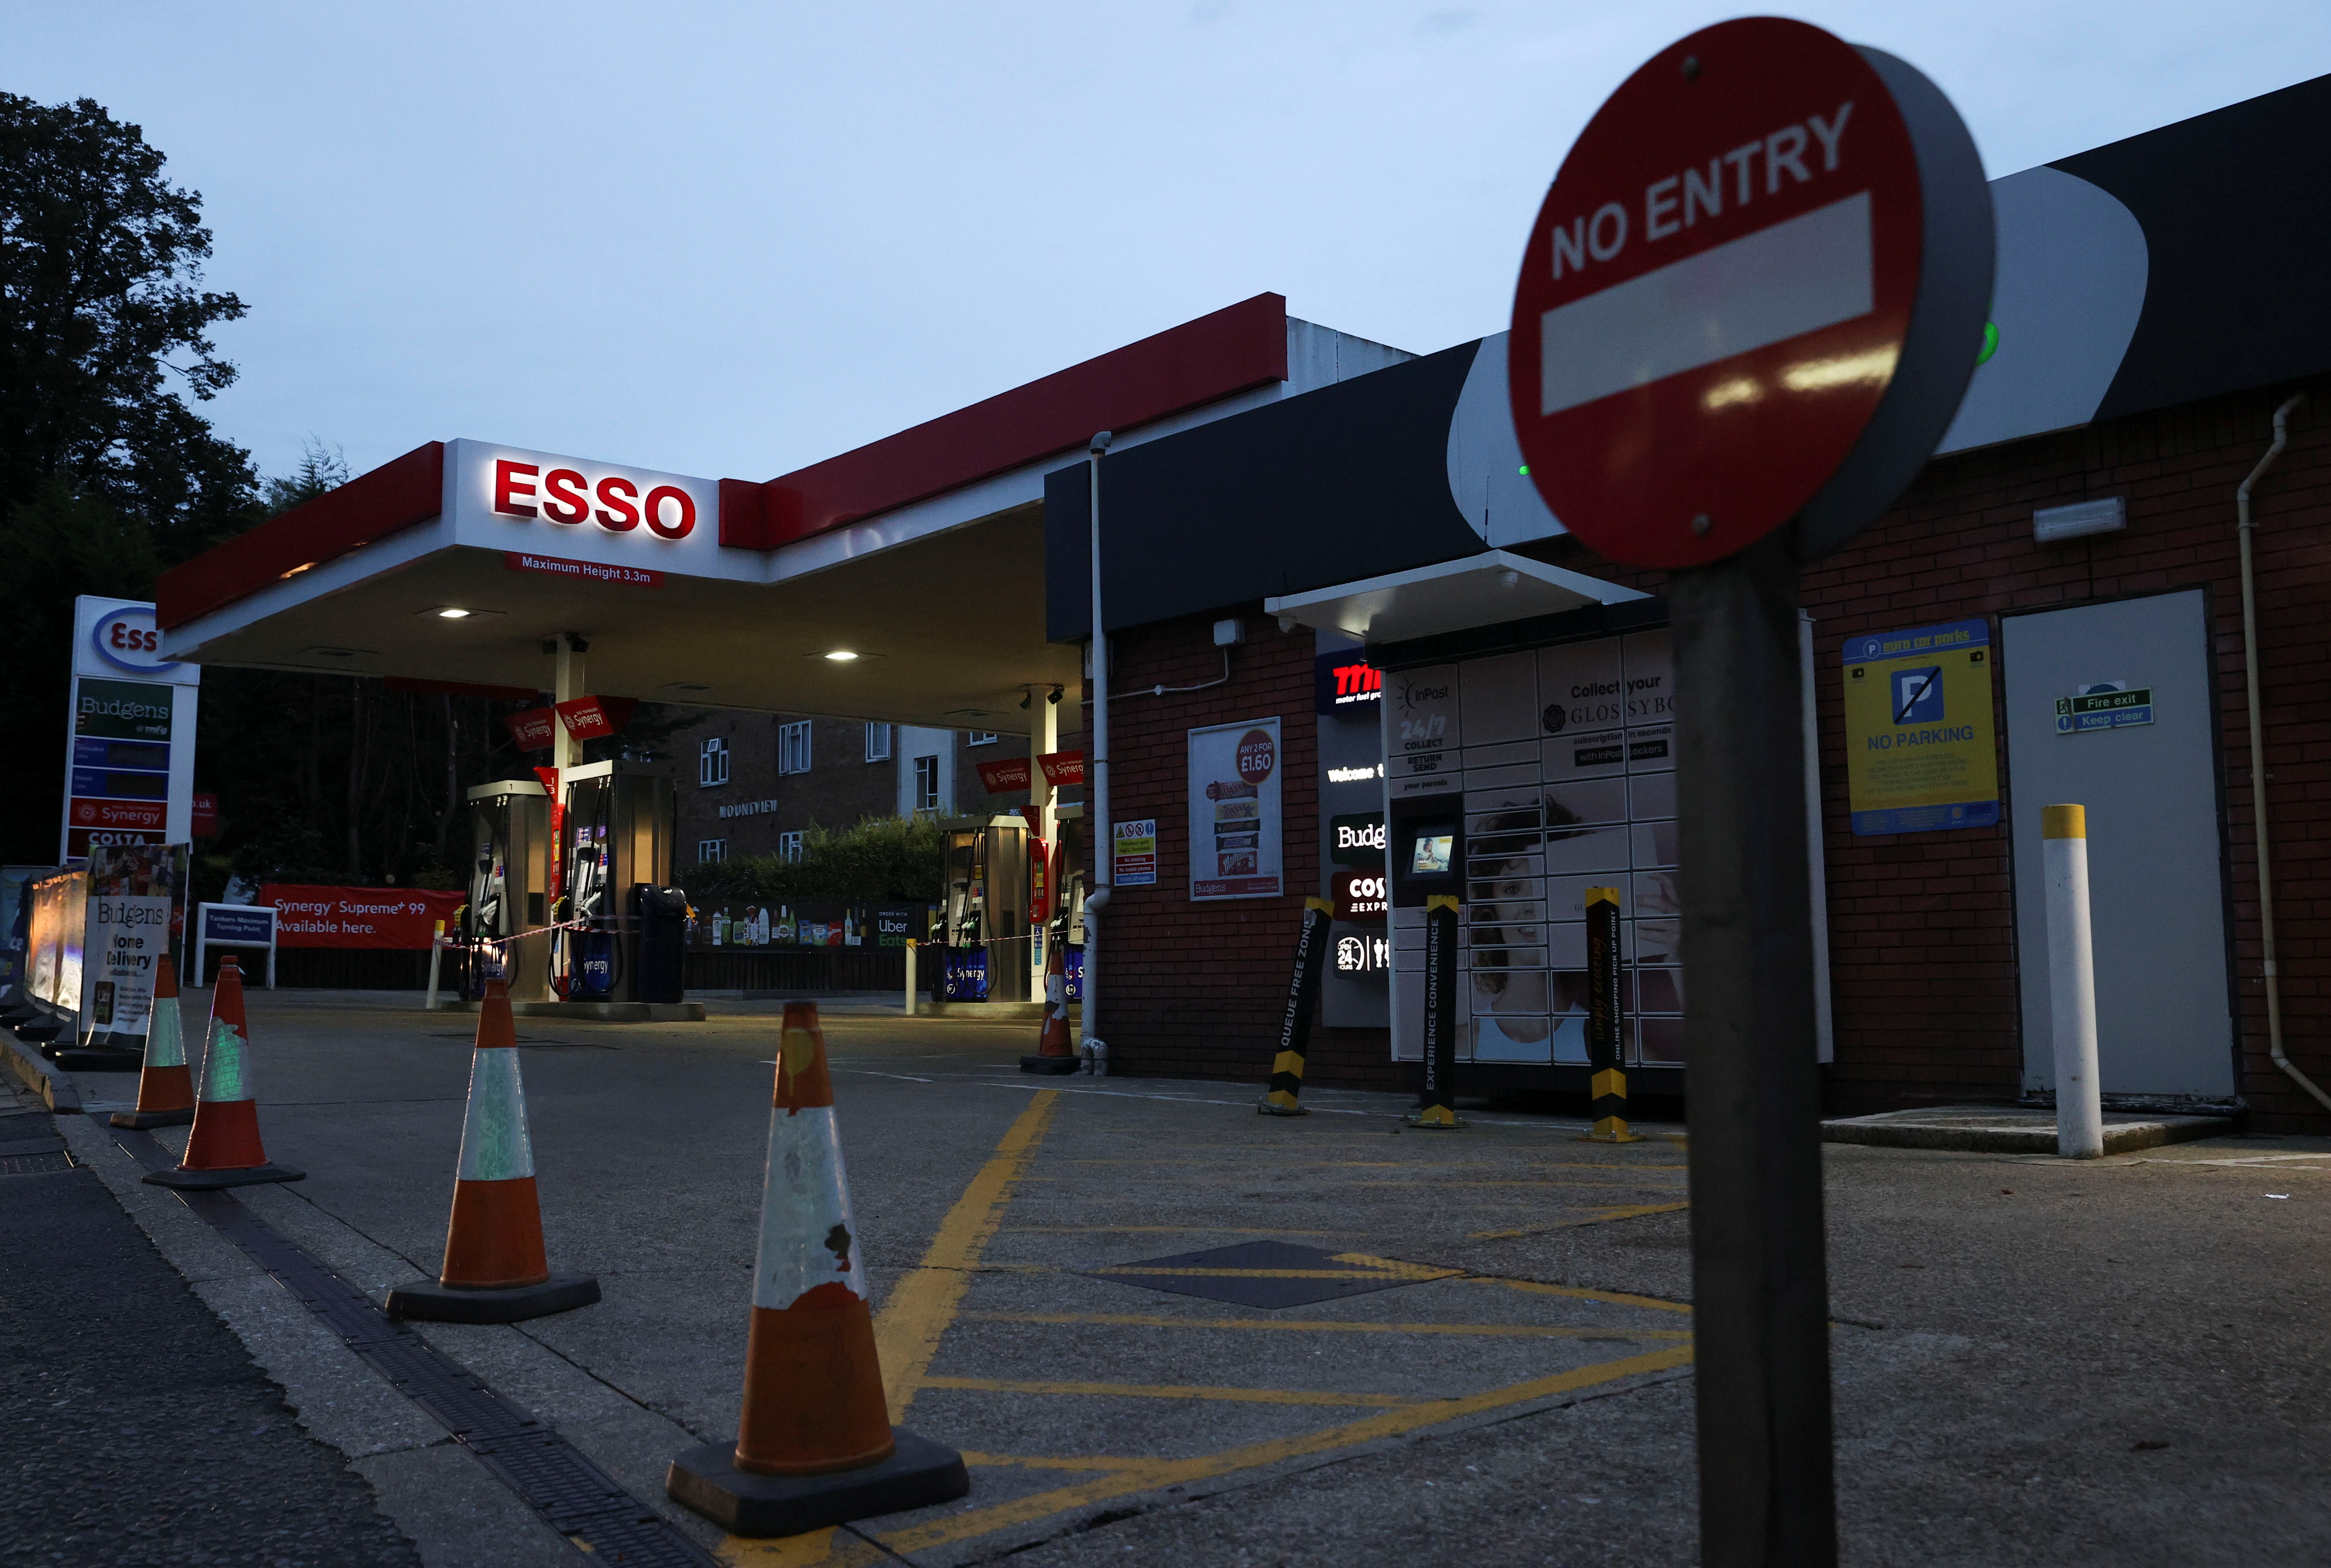 Los conos de tráfico bloquean la entrada a una estación de combustible en medio de una escasez de combustible, en Londres, Gran Bretaña, el 30 de septiembre de 2021. REUTERS / Hannah McKay